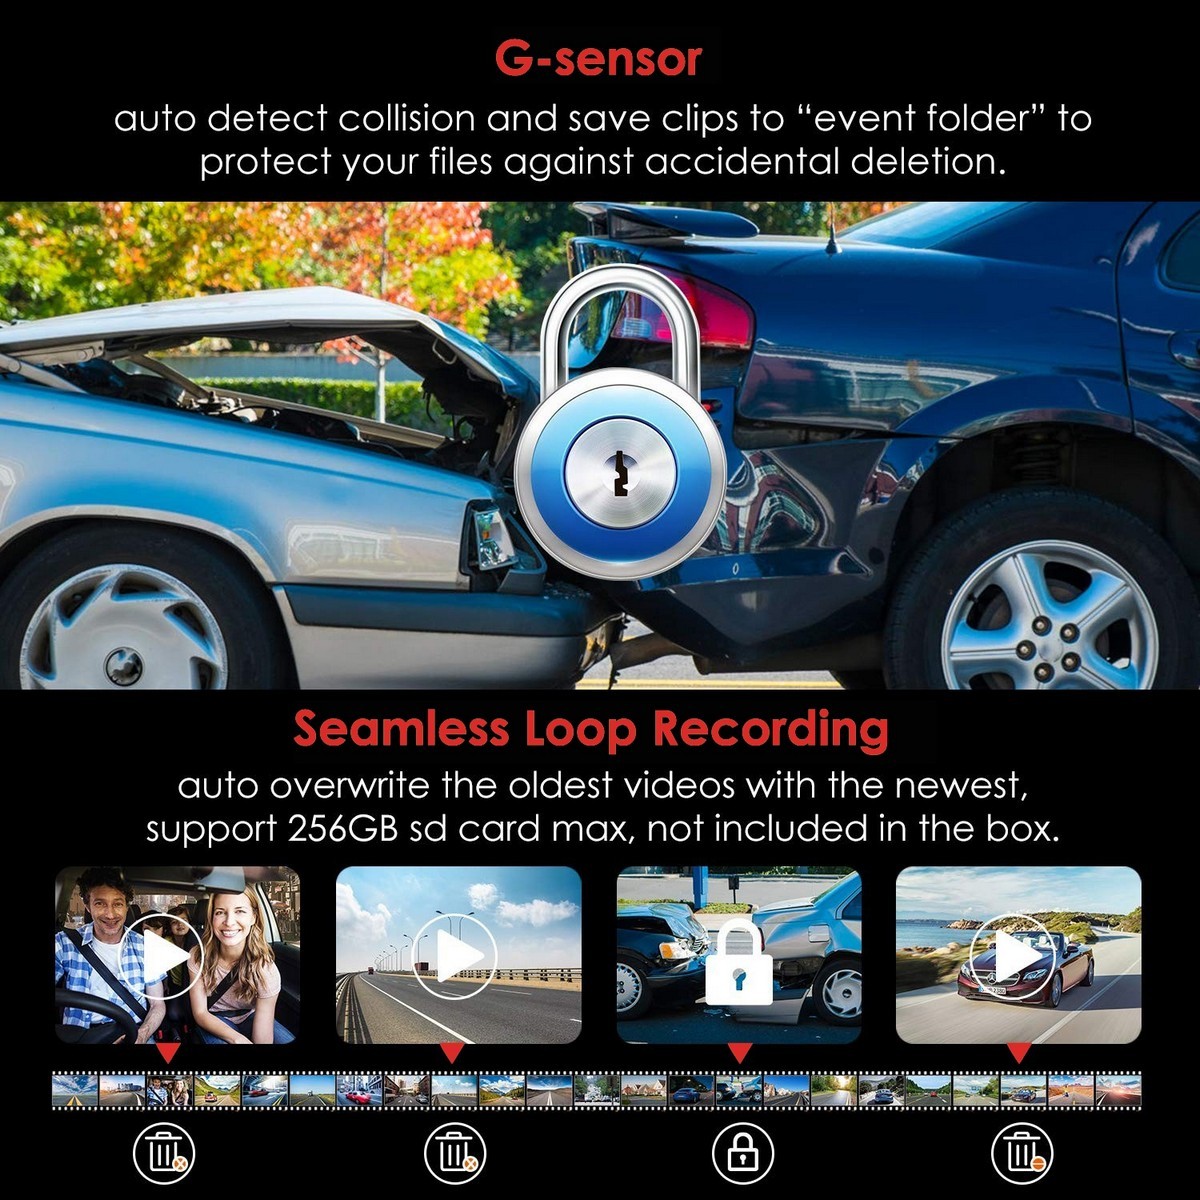 indbygget G-sensor - bilkamera